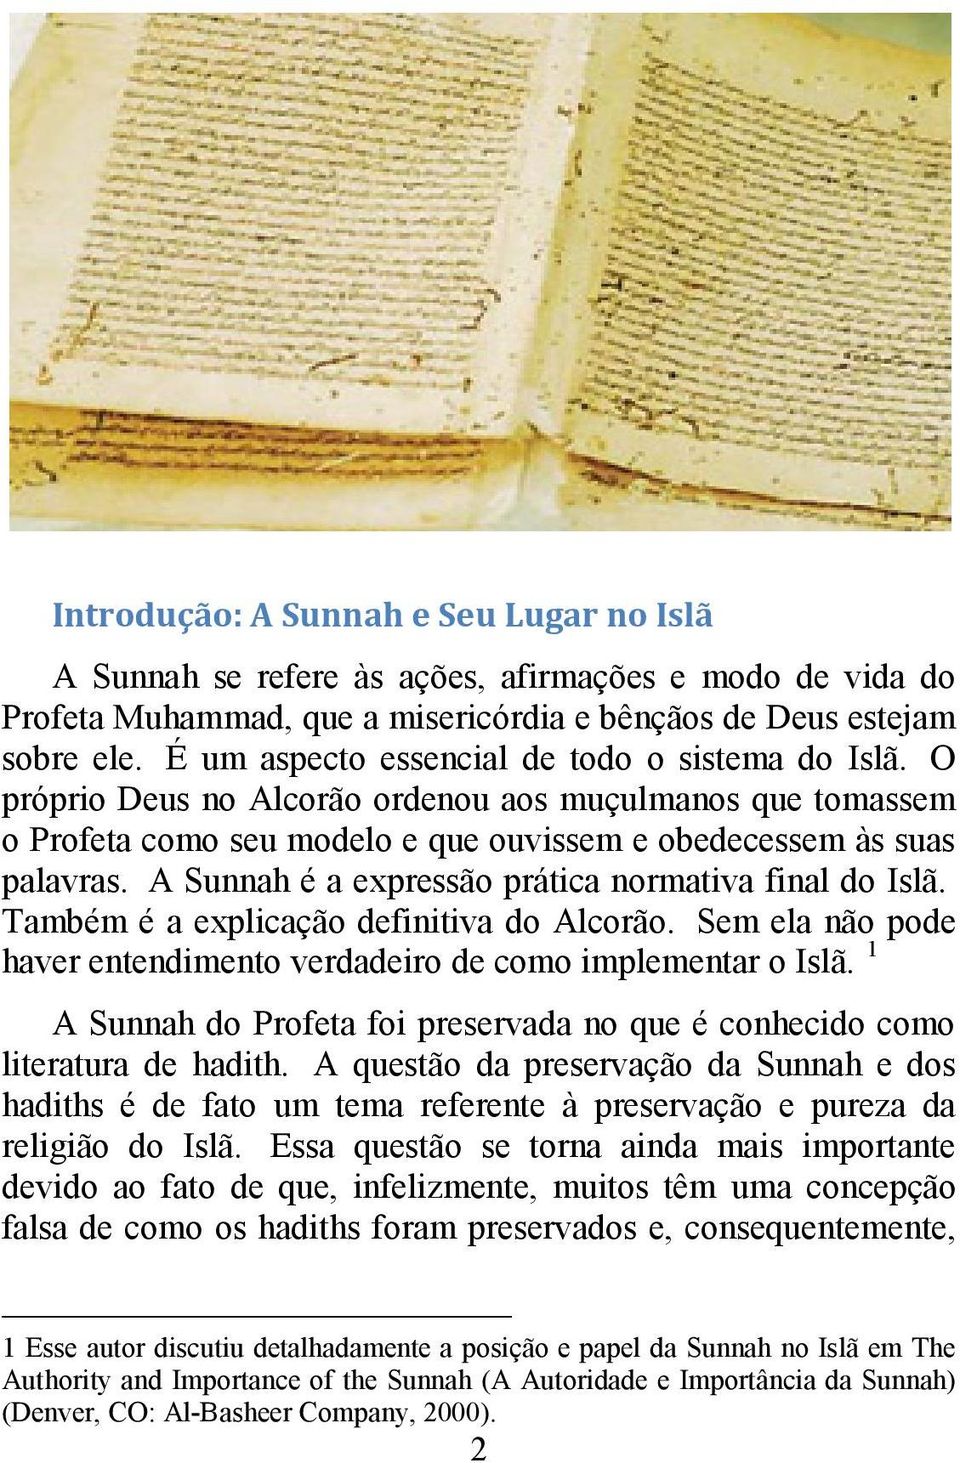 A Sunnah é a expressão prática normativa final do Islã. Também é a explicação definitiva do Alcorão. Sem ela não pode haver entendimento verdadeiro de como implementar o Islã.